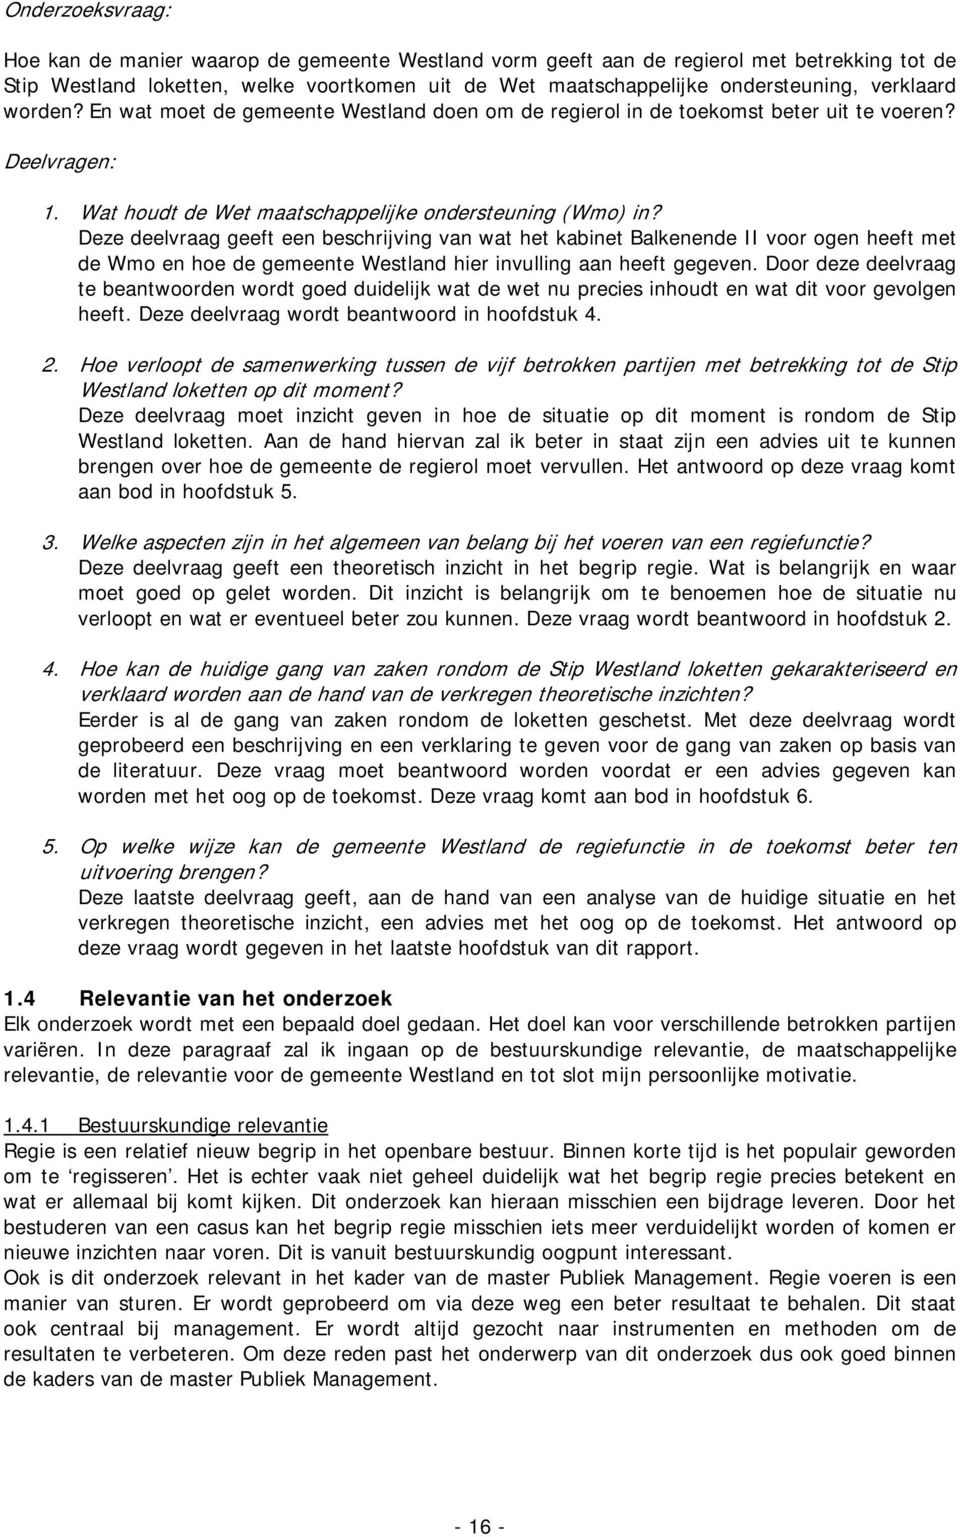 Deze deelvraag geeft een beschrijving van wat het kabinet Balkenende II voor ogen heeft met de Wmo en hoe de gemeente Westland hier invulling aan heeft gegeven.